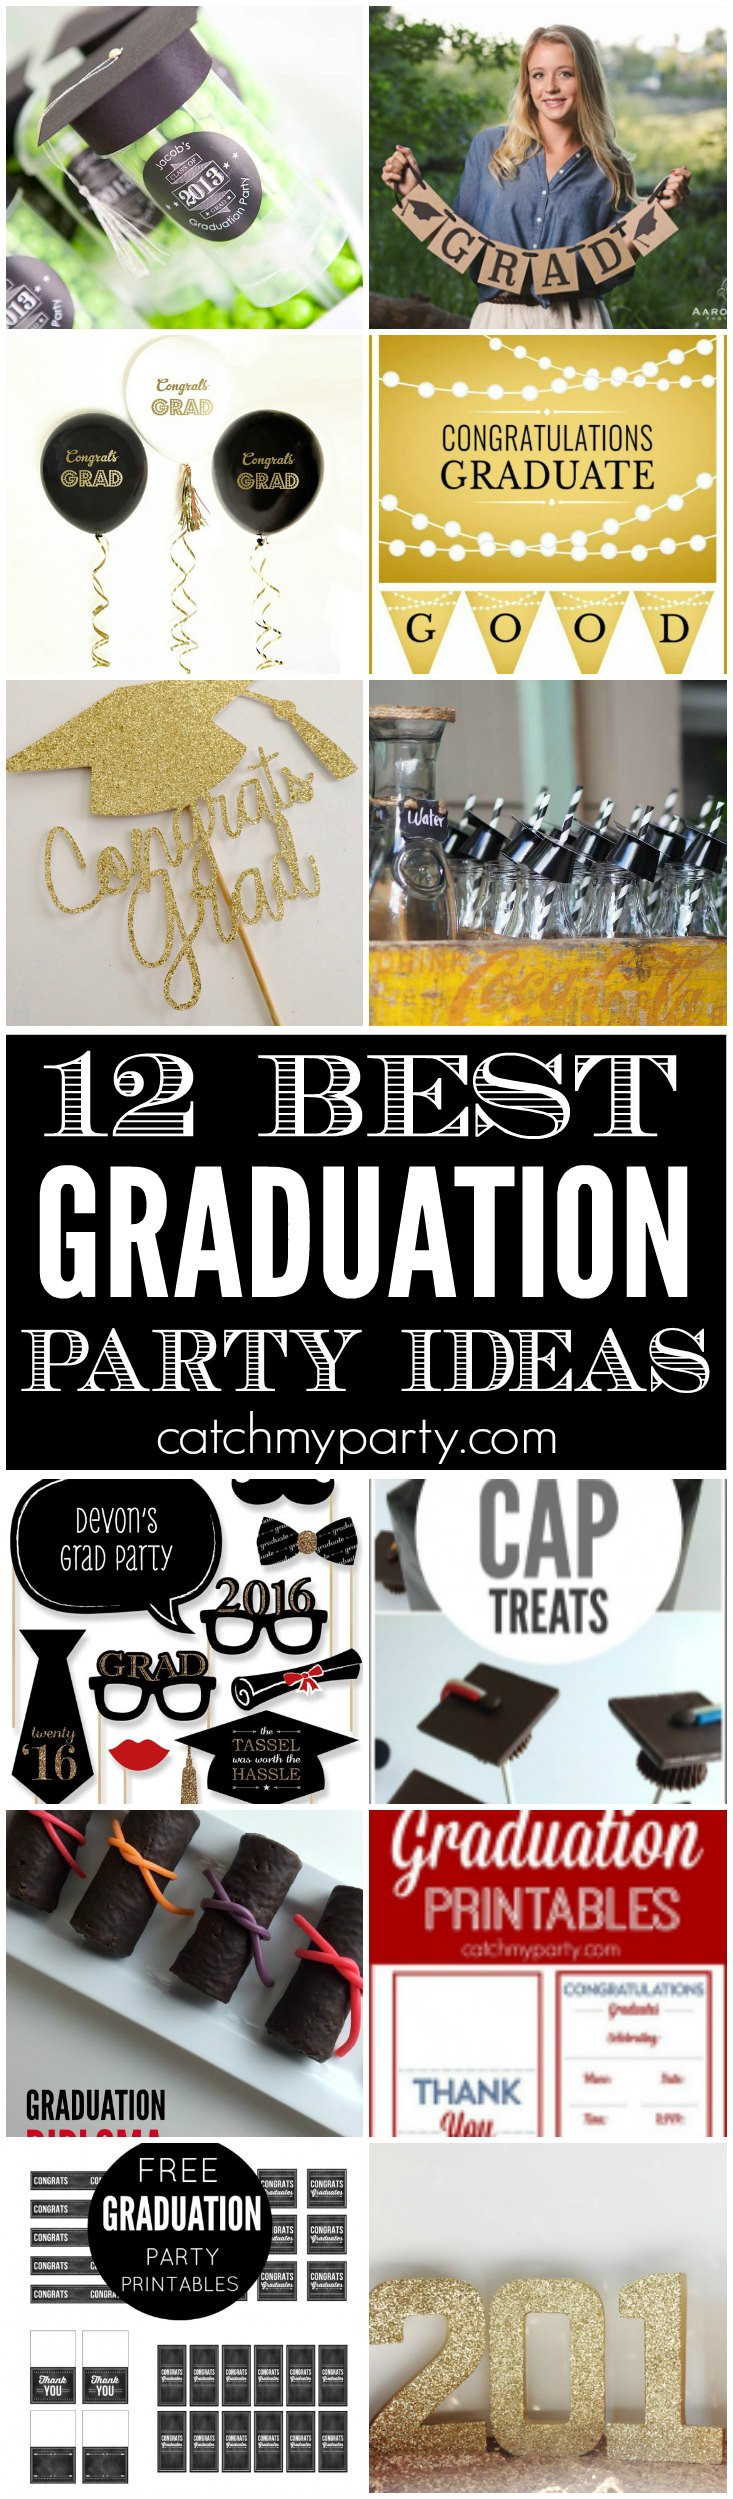 Best College Graduation Party Ideas
 12 Best Graduation Party Ideas